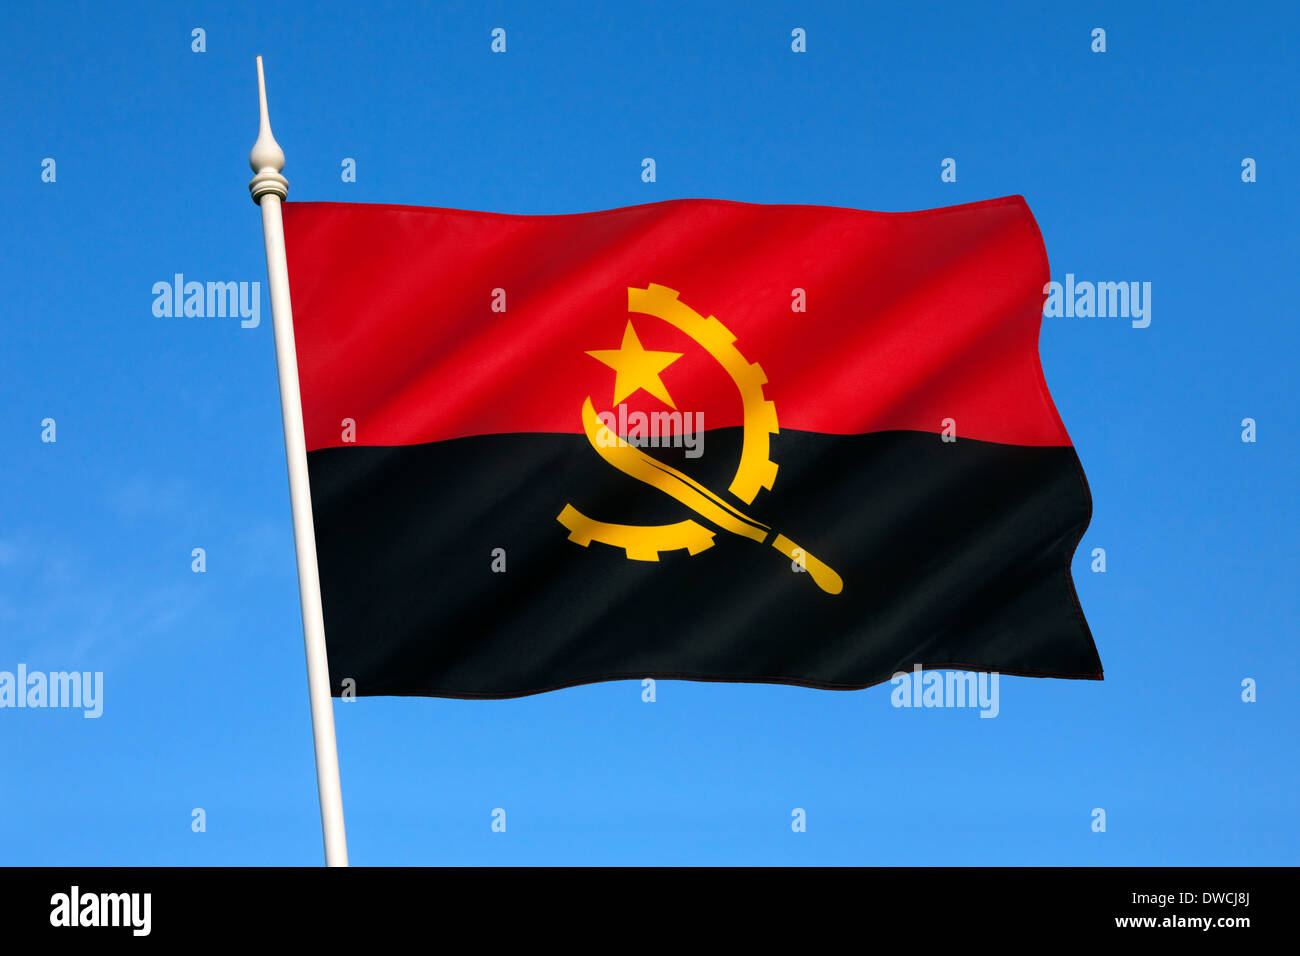 La bandera nacional de Angola entró en uso en el momento de la independencia el 11 de noviembre de 1975. Foto de stock